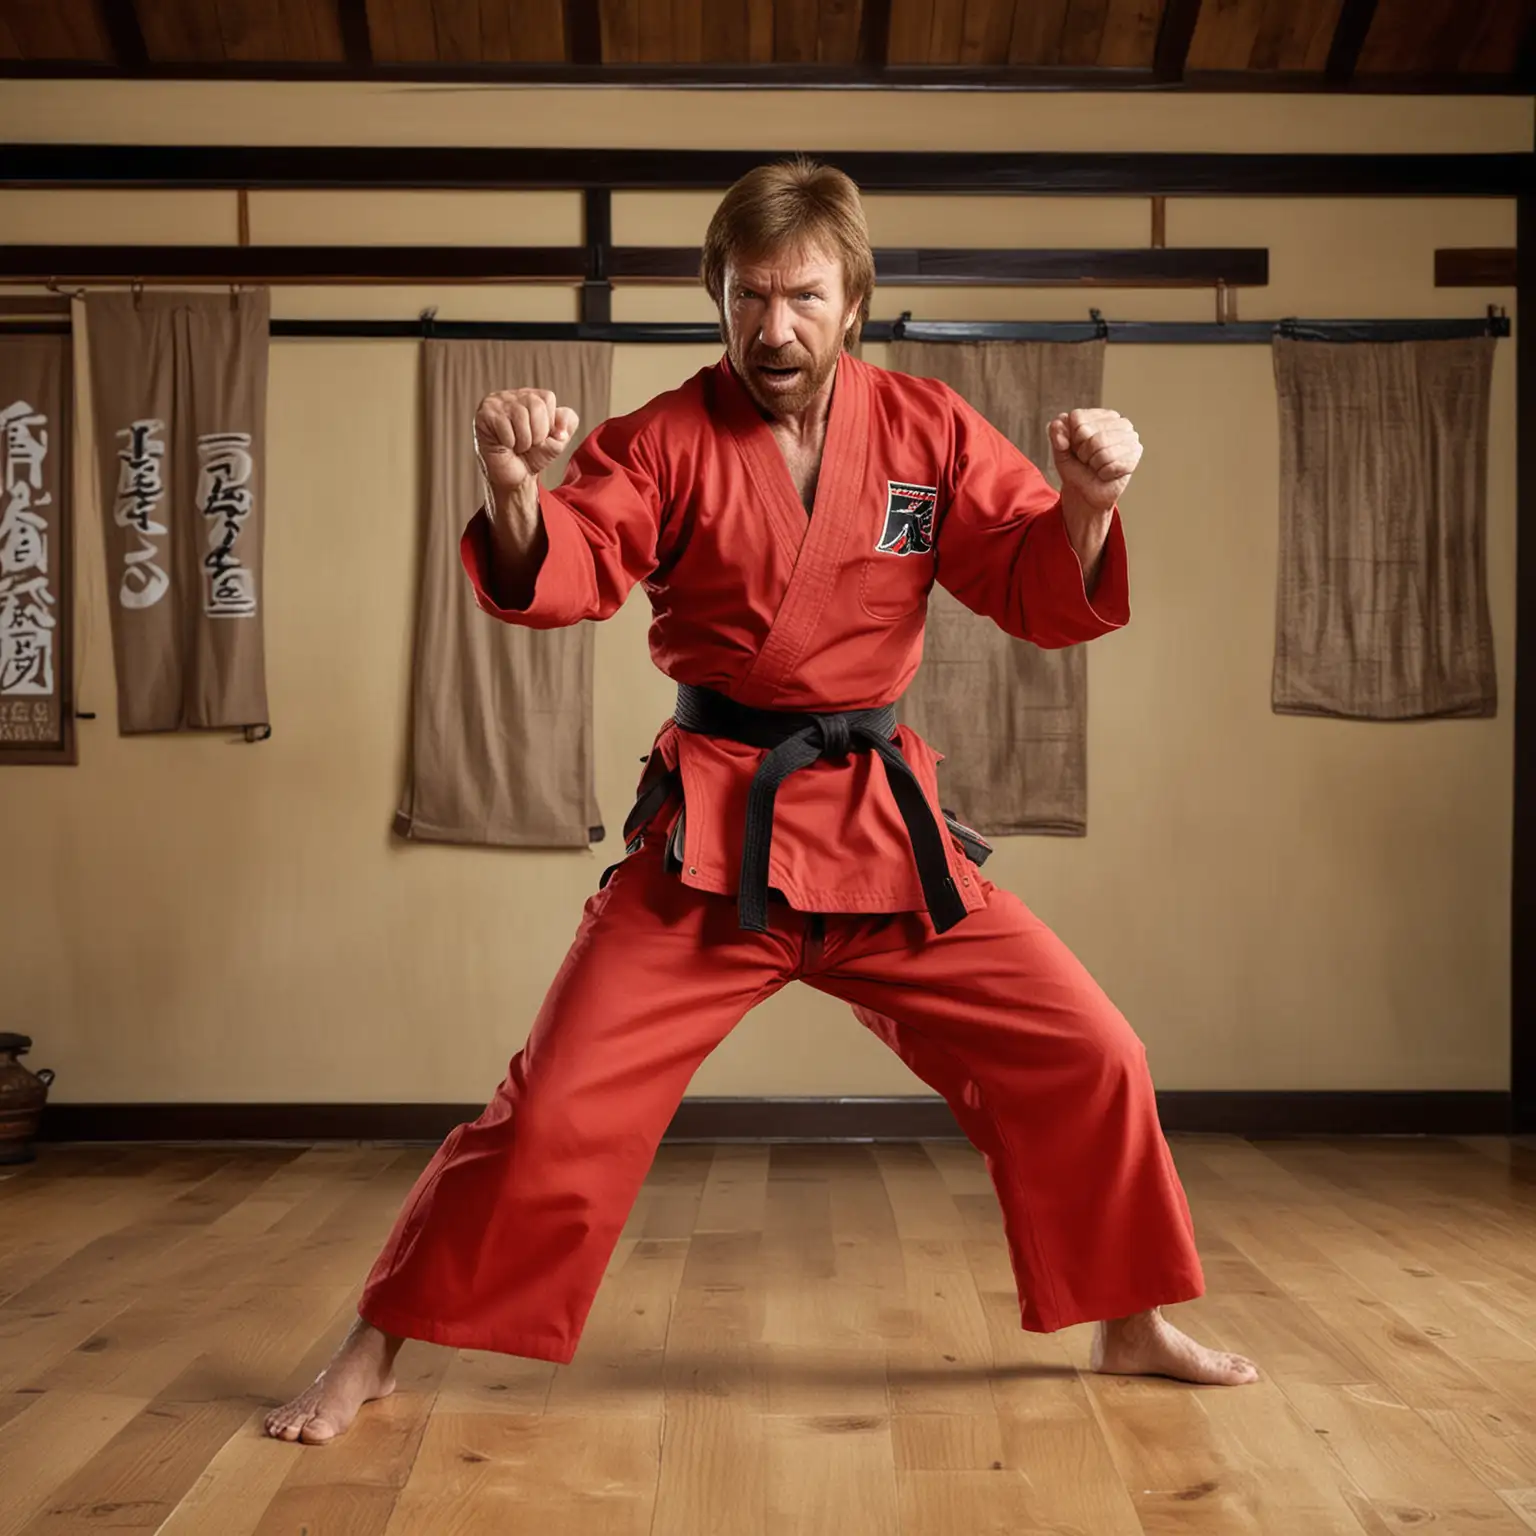 Chuck Norris Lookalike Practicing Karate in Traditional Dojo